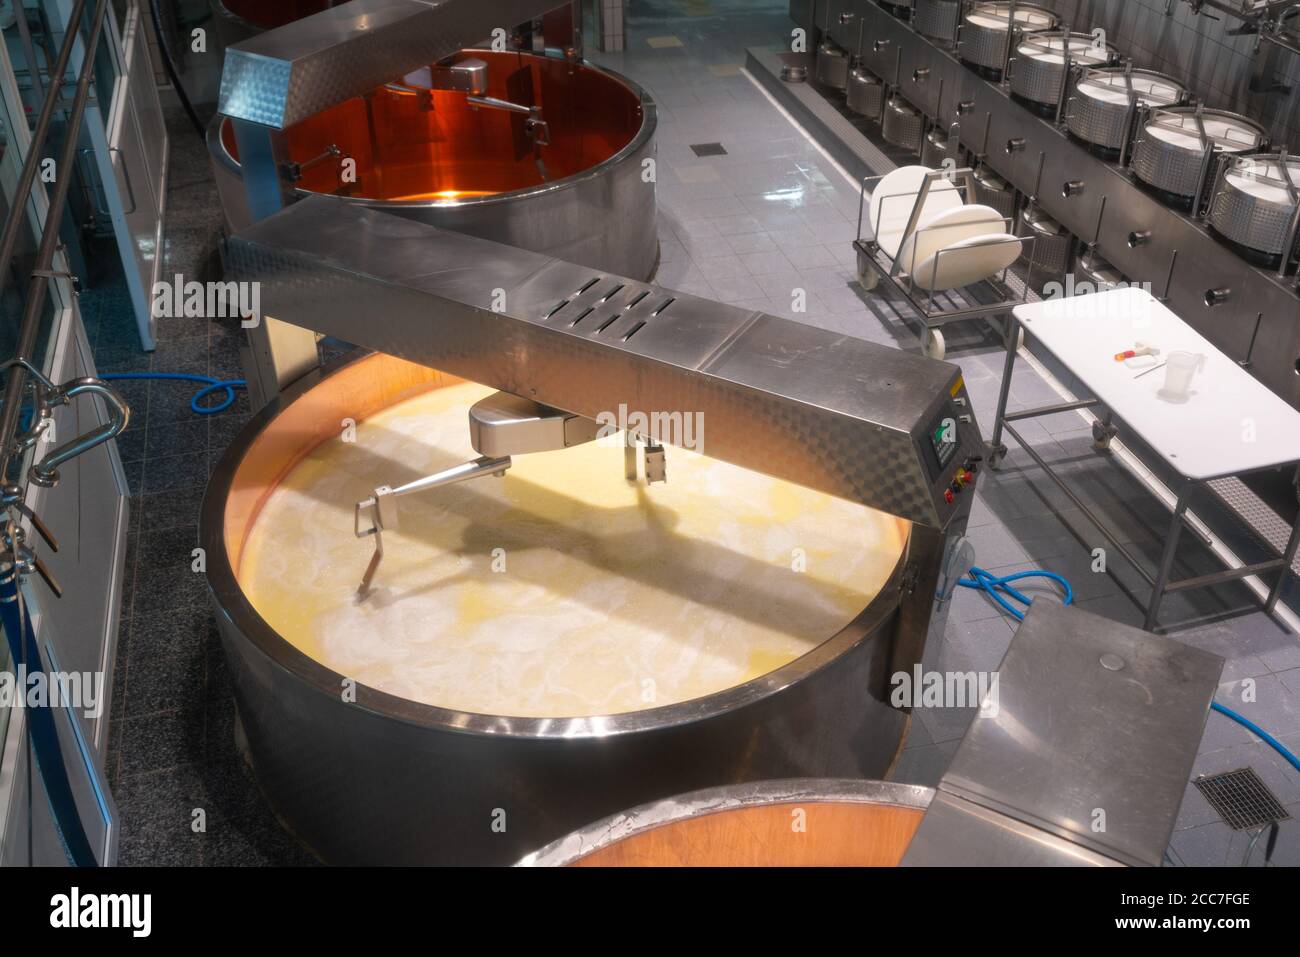 Gruyères Suisse , 27 juin 2020 : vue intérieure du musée de la Maison du Gruyère et de la fromagerie suisse avec réservoir de lait remuant et chauffant le cu Banque D'Images